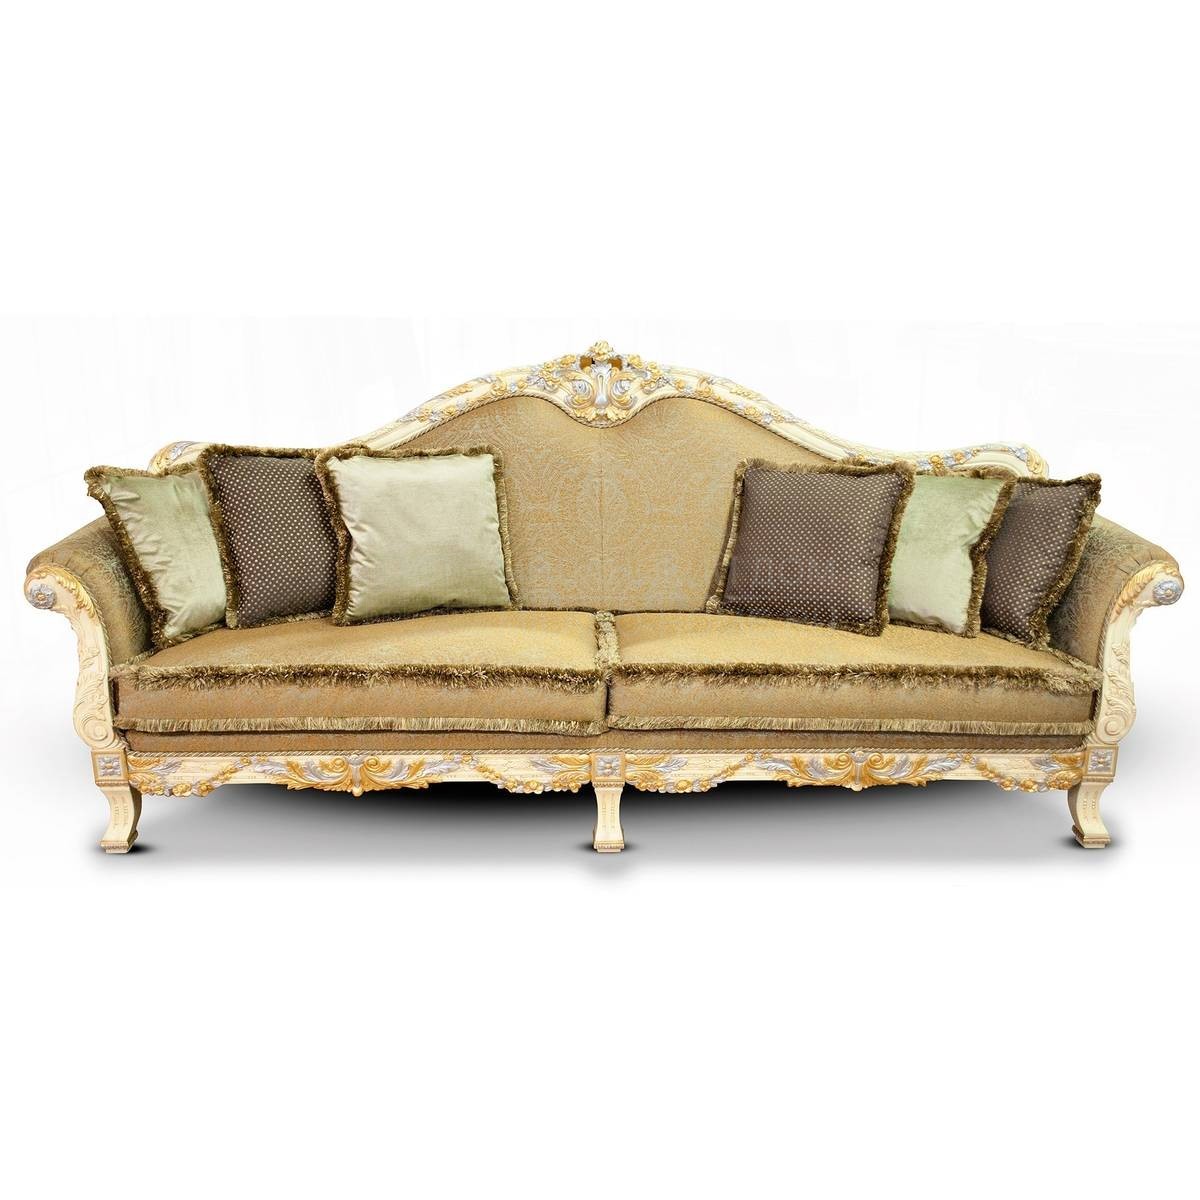 Прямой диван The Upholstery/D400 из Италии фабрики FRANCESCO MOLON